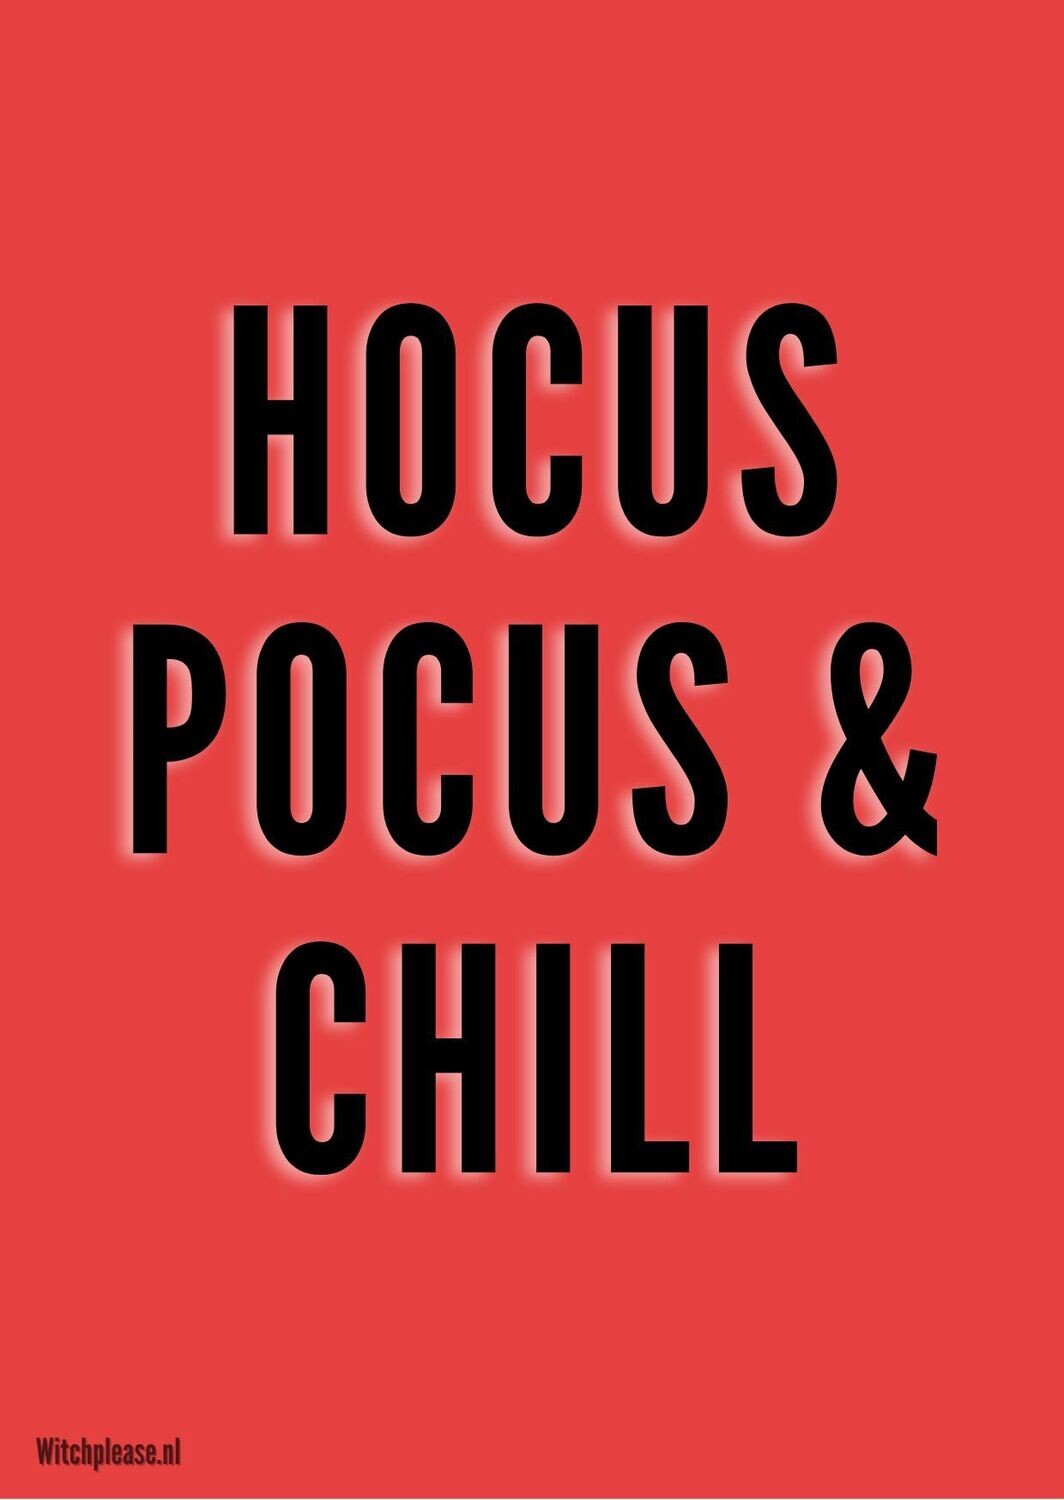 Ansichtkaart Hocus Pocus